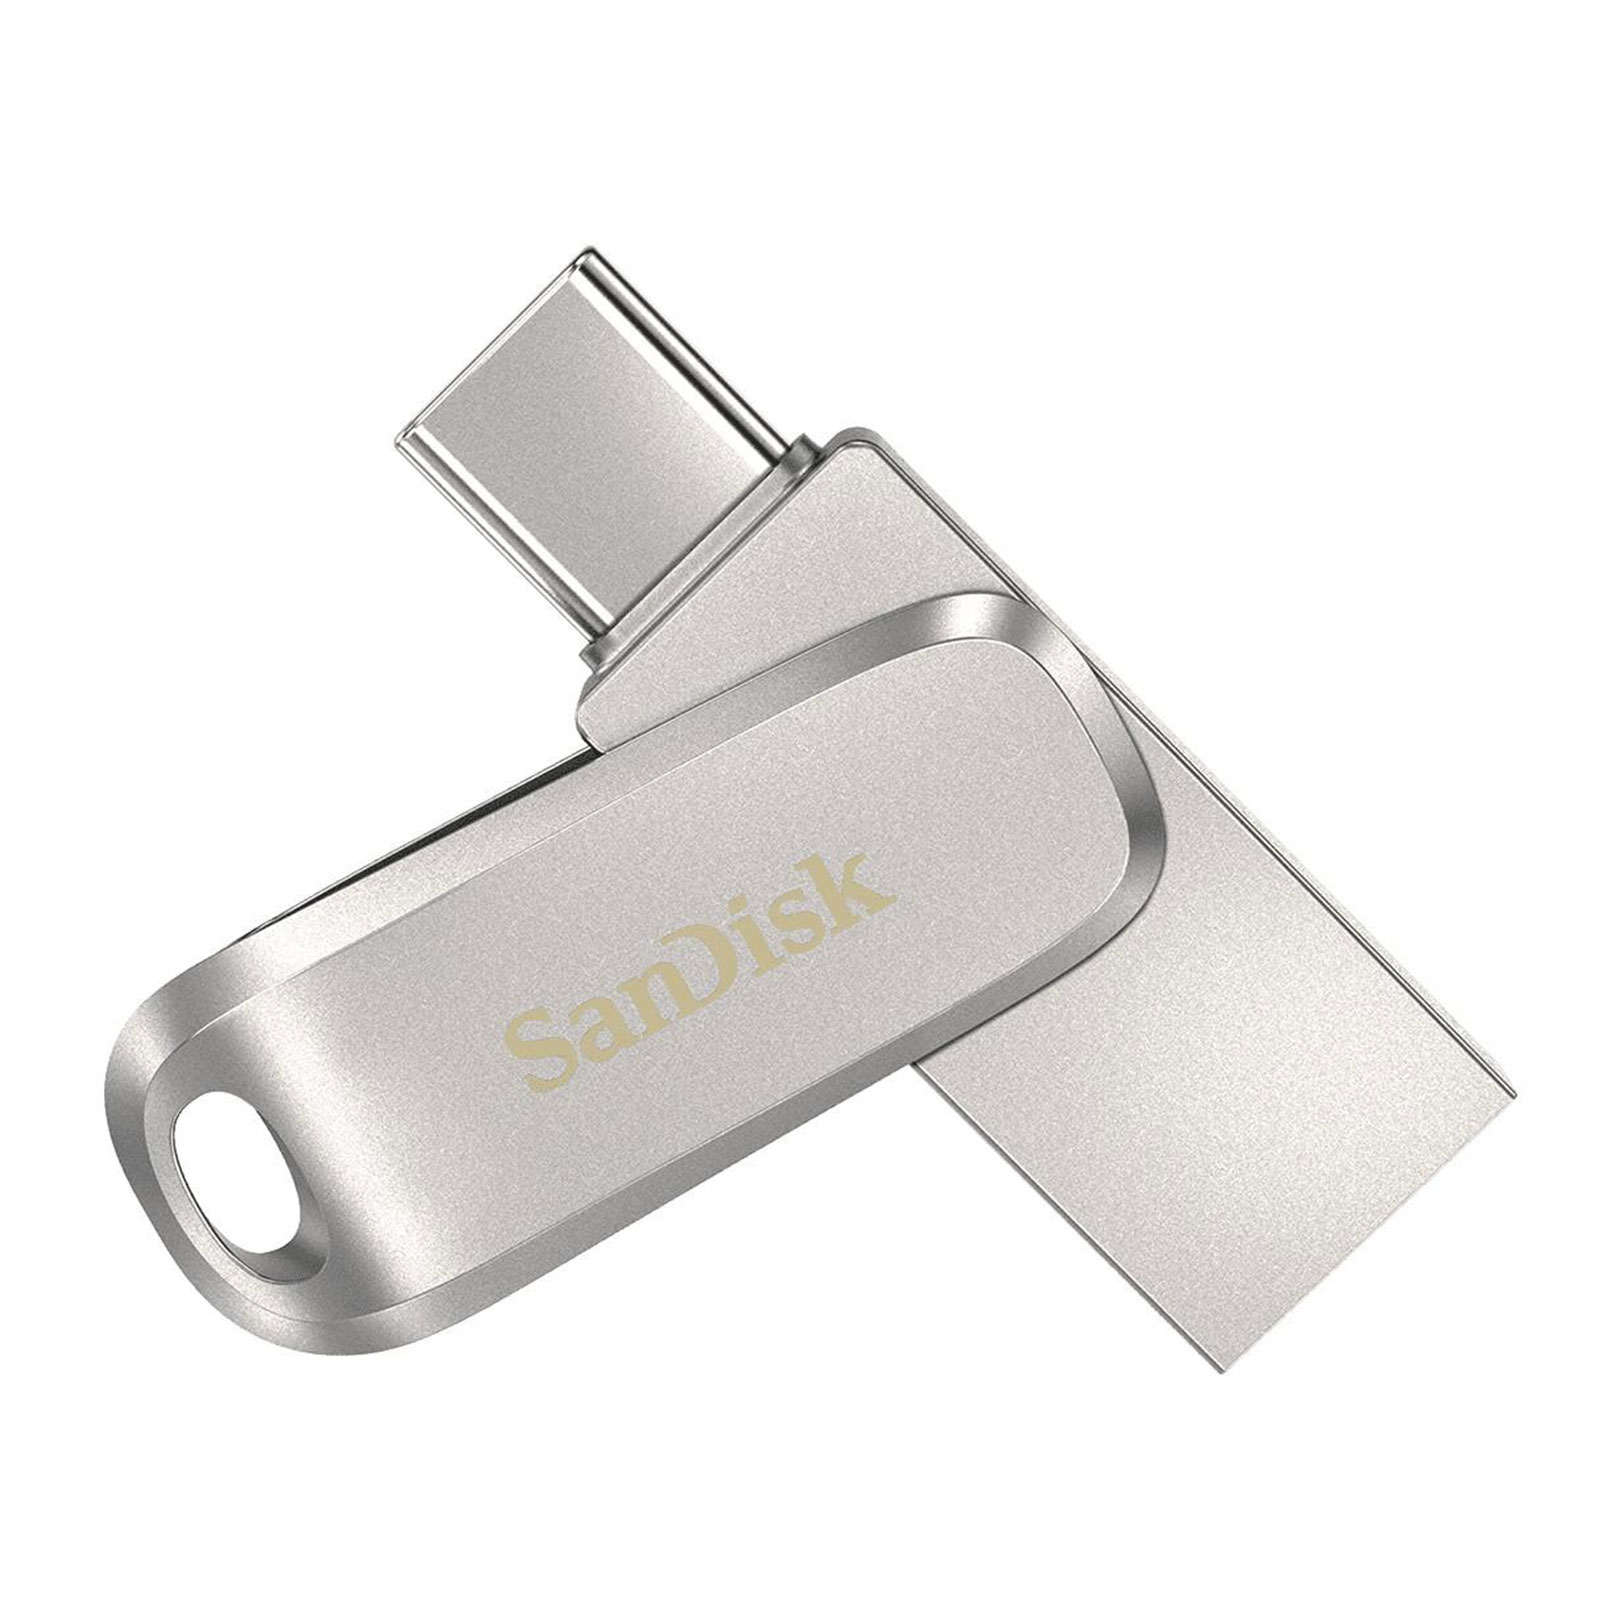 SanDisk Ultra Dual USB Flash Drive Luxe 32GB USB-Stick